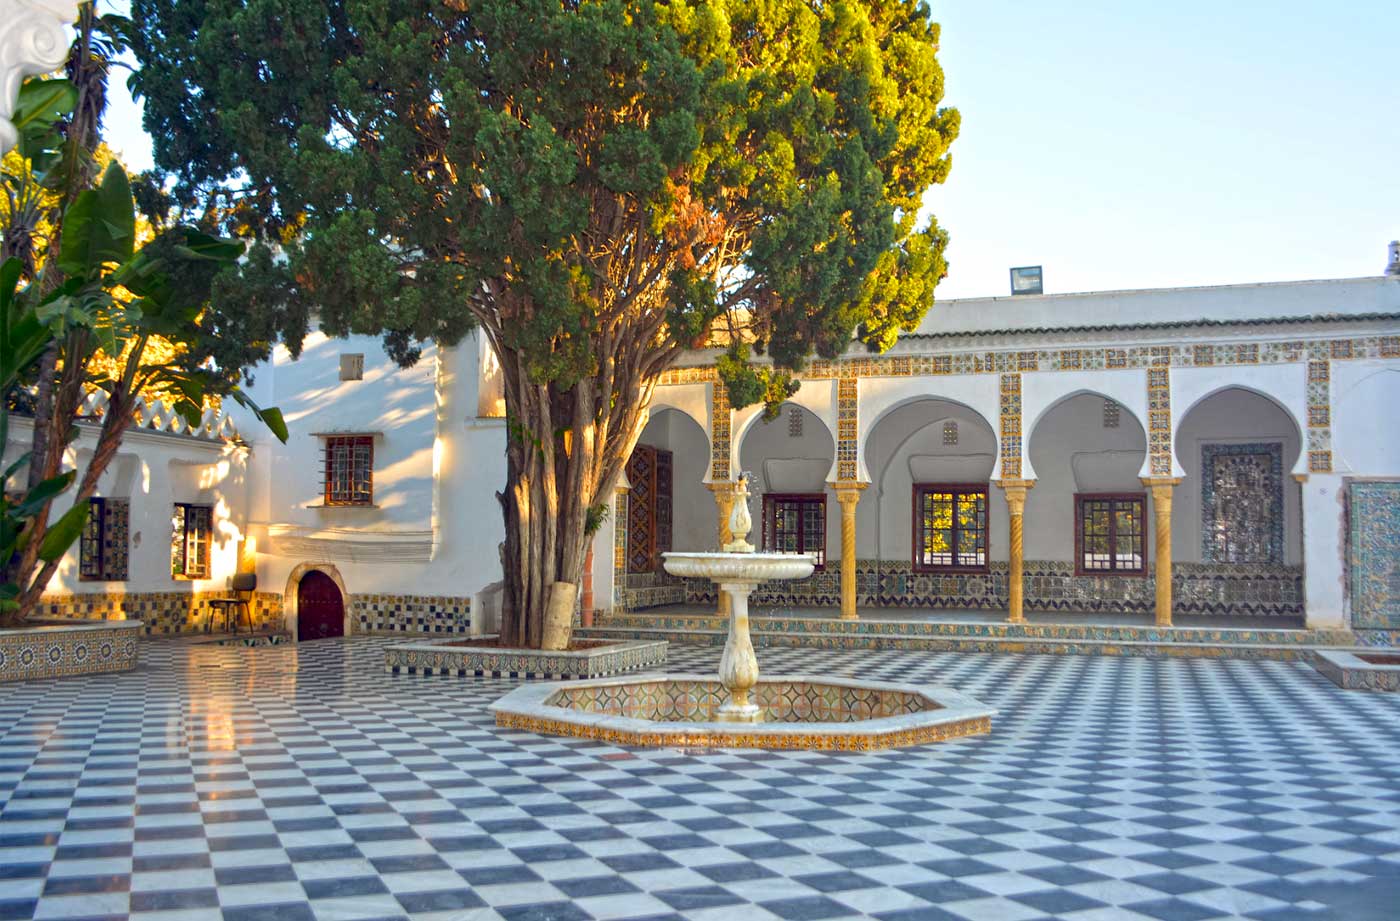 Bardo National Museum (Algiers)